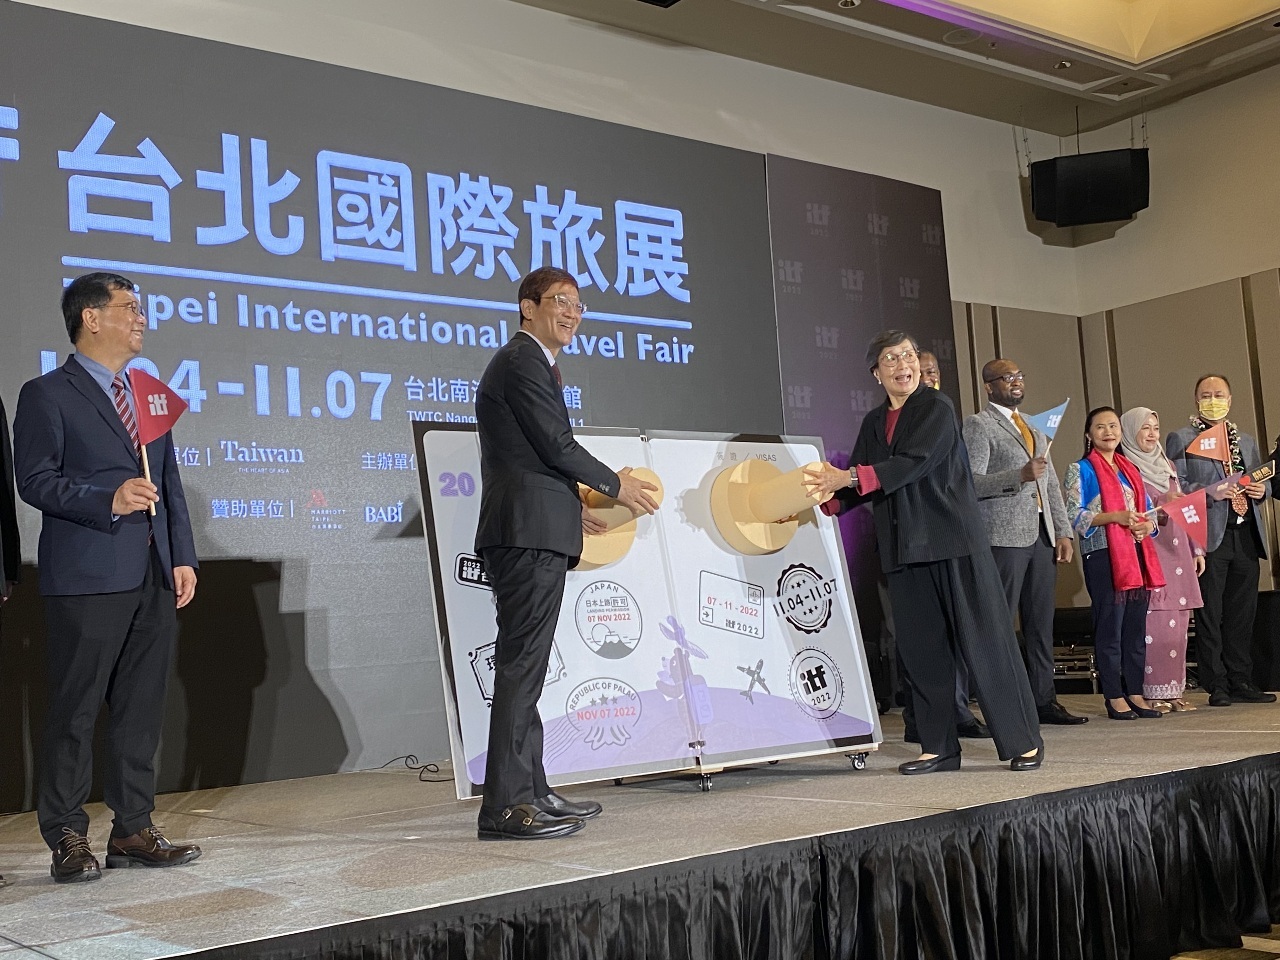 Hội chợ Du lịch quốc tế Đài Bắc ITF chính thức khai mạc vào ngày 4/11